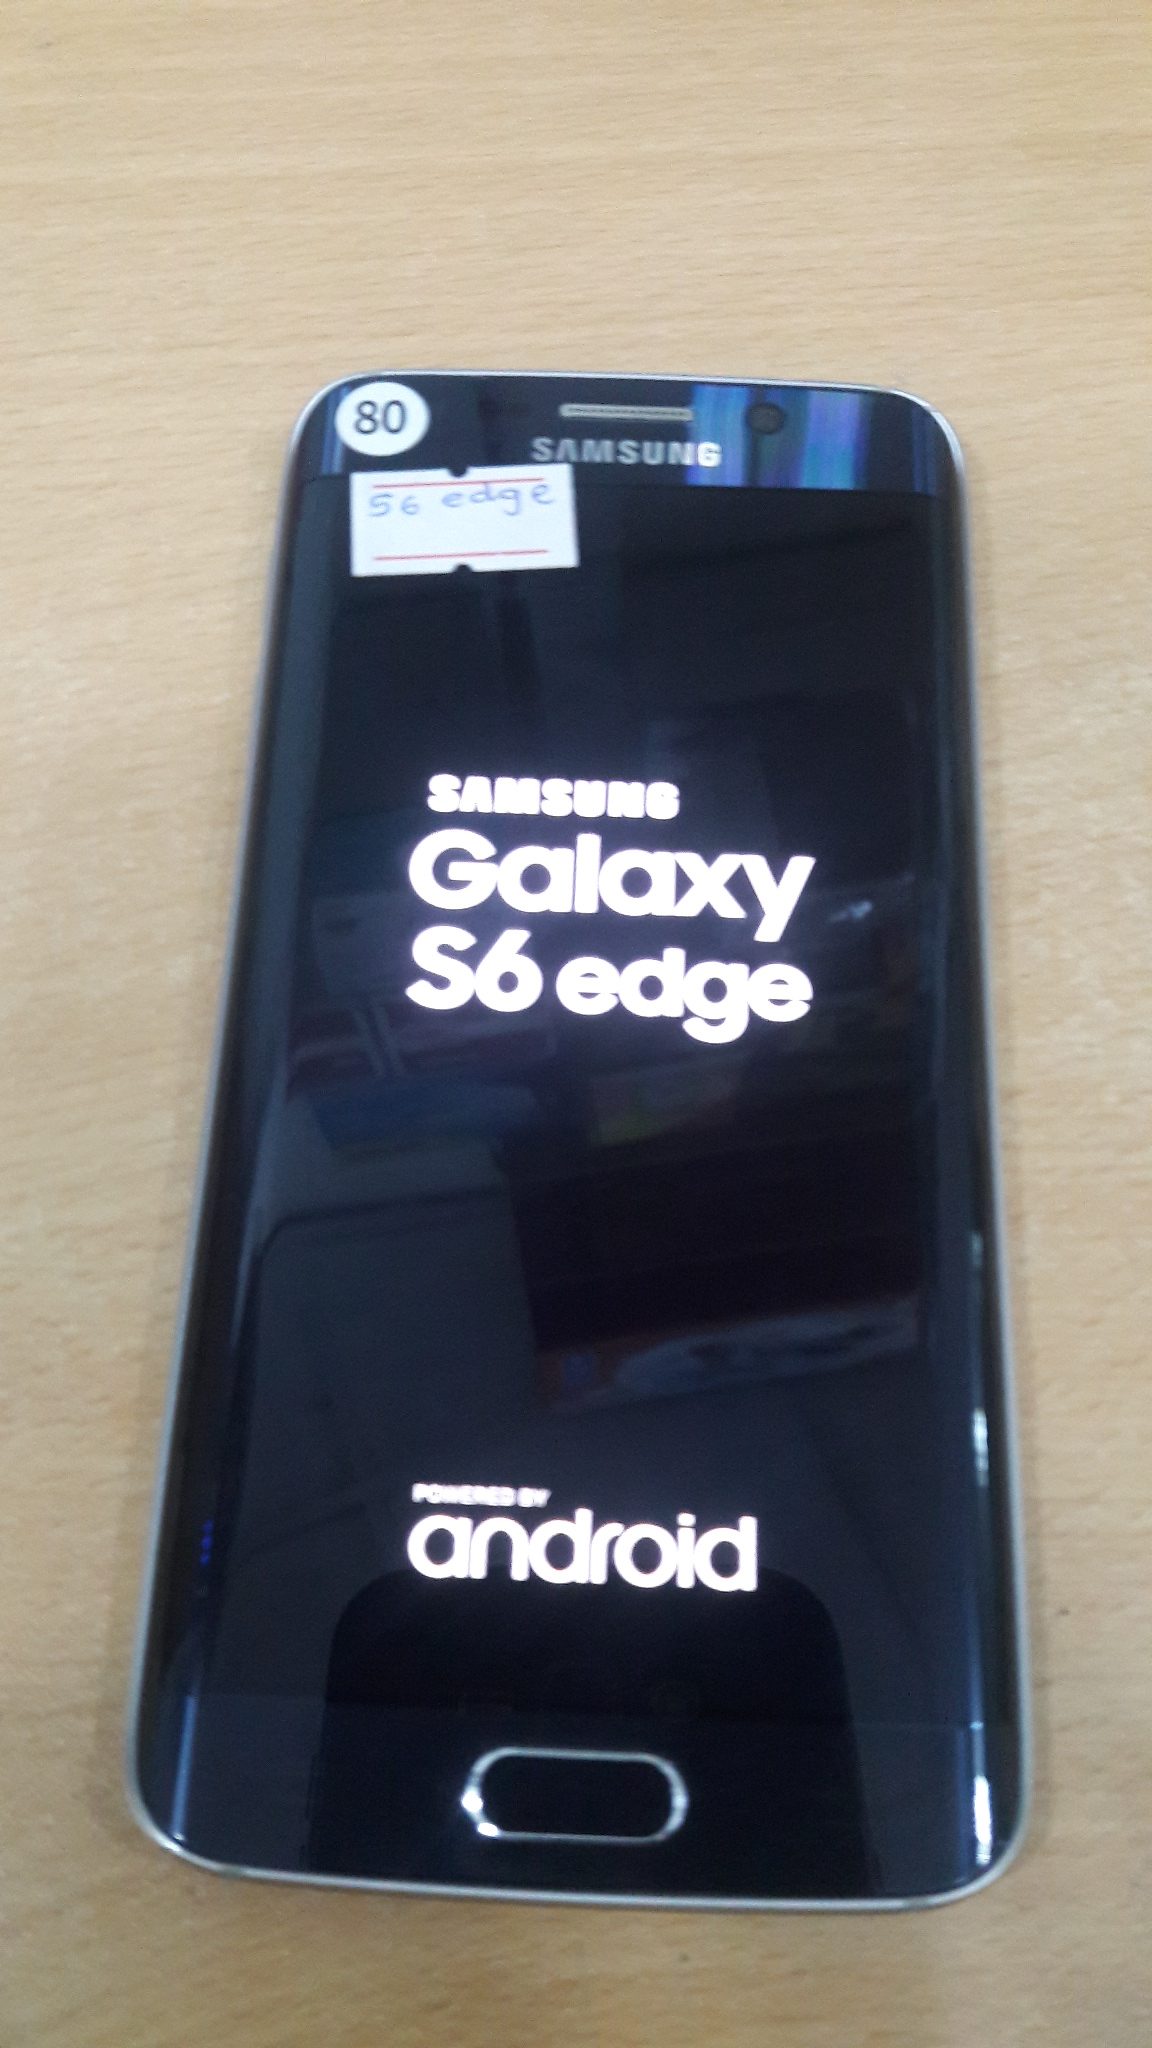 Samsung Galaxy S6 edge | ShopHere